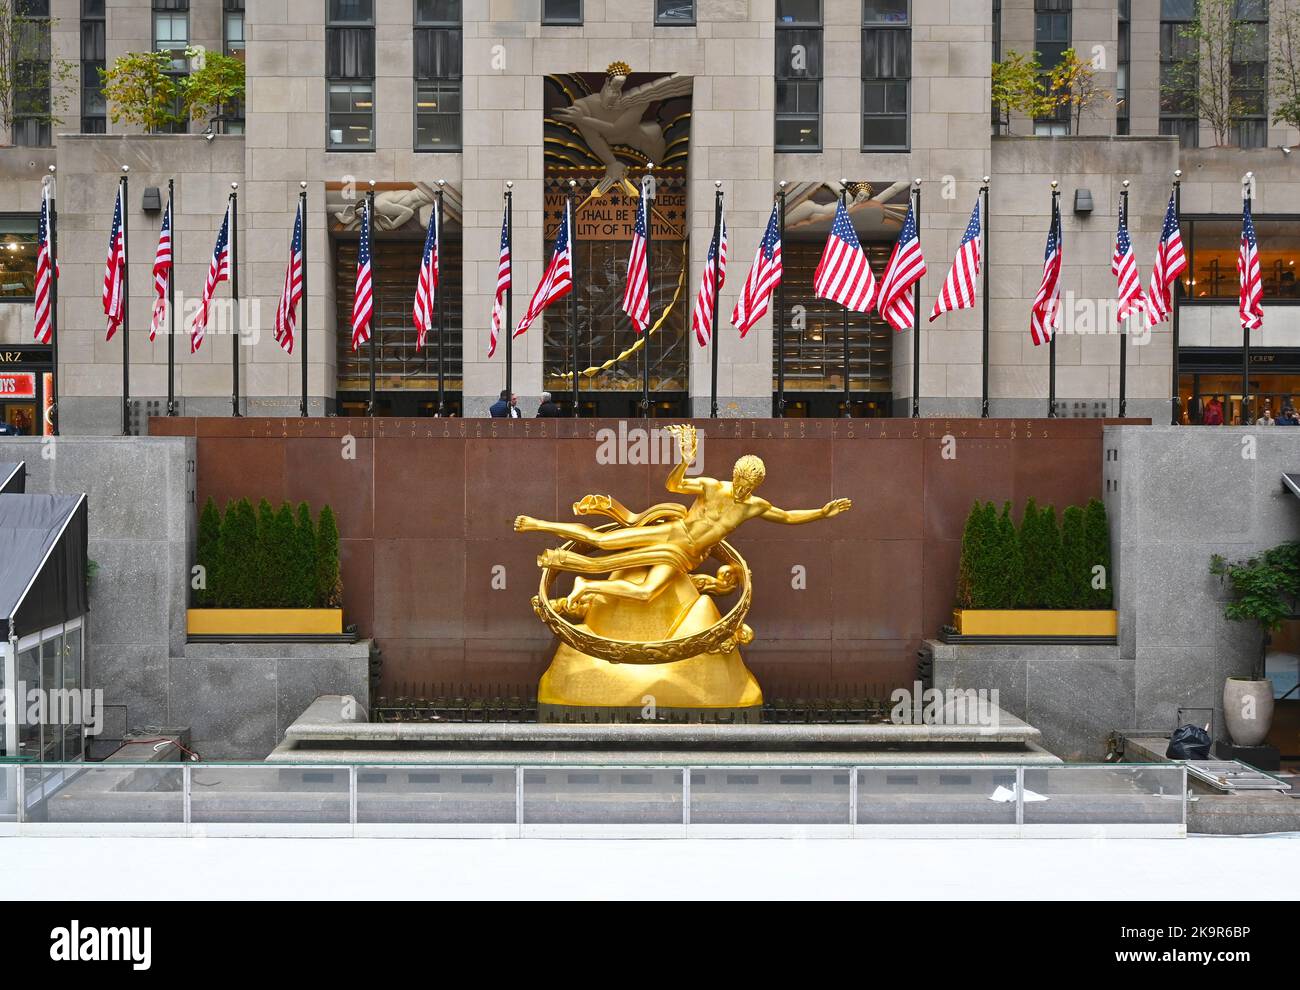 NEW YORK - 24 ottobre 2022: Statua di Prometheus all'estremità occidentale della piazza sommersa, che ospita la pista di pattinaggio su ghiaccio, nel Rockefeller Center. Foto Stock